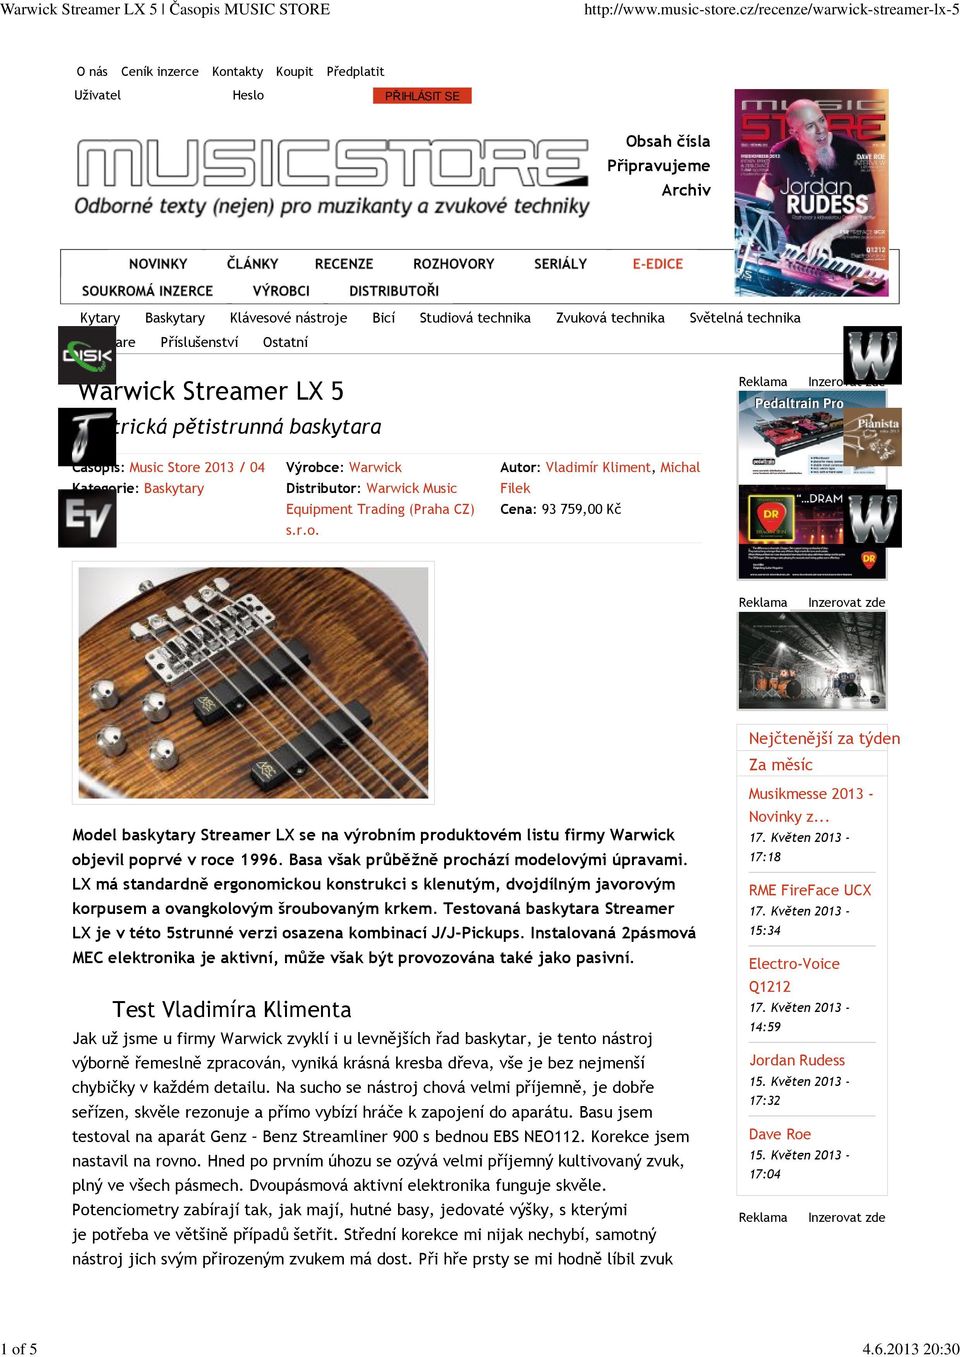 technika Software Příslušenství Ostatní Elektrická pětistrunná baskytara Reklama Inzerovat zde Časopis: Music Store 213 / 4 Kategorie: Baskytary Výrobce: Warwick Distributor: Warwick Music Equipment